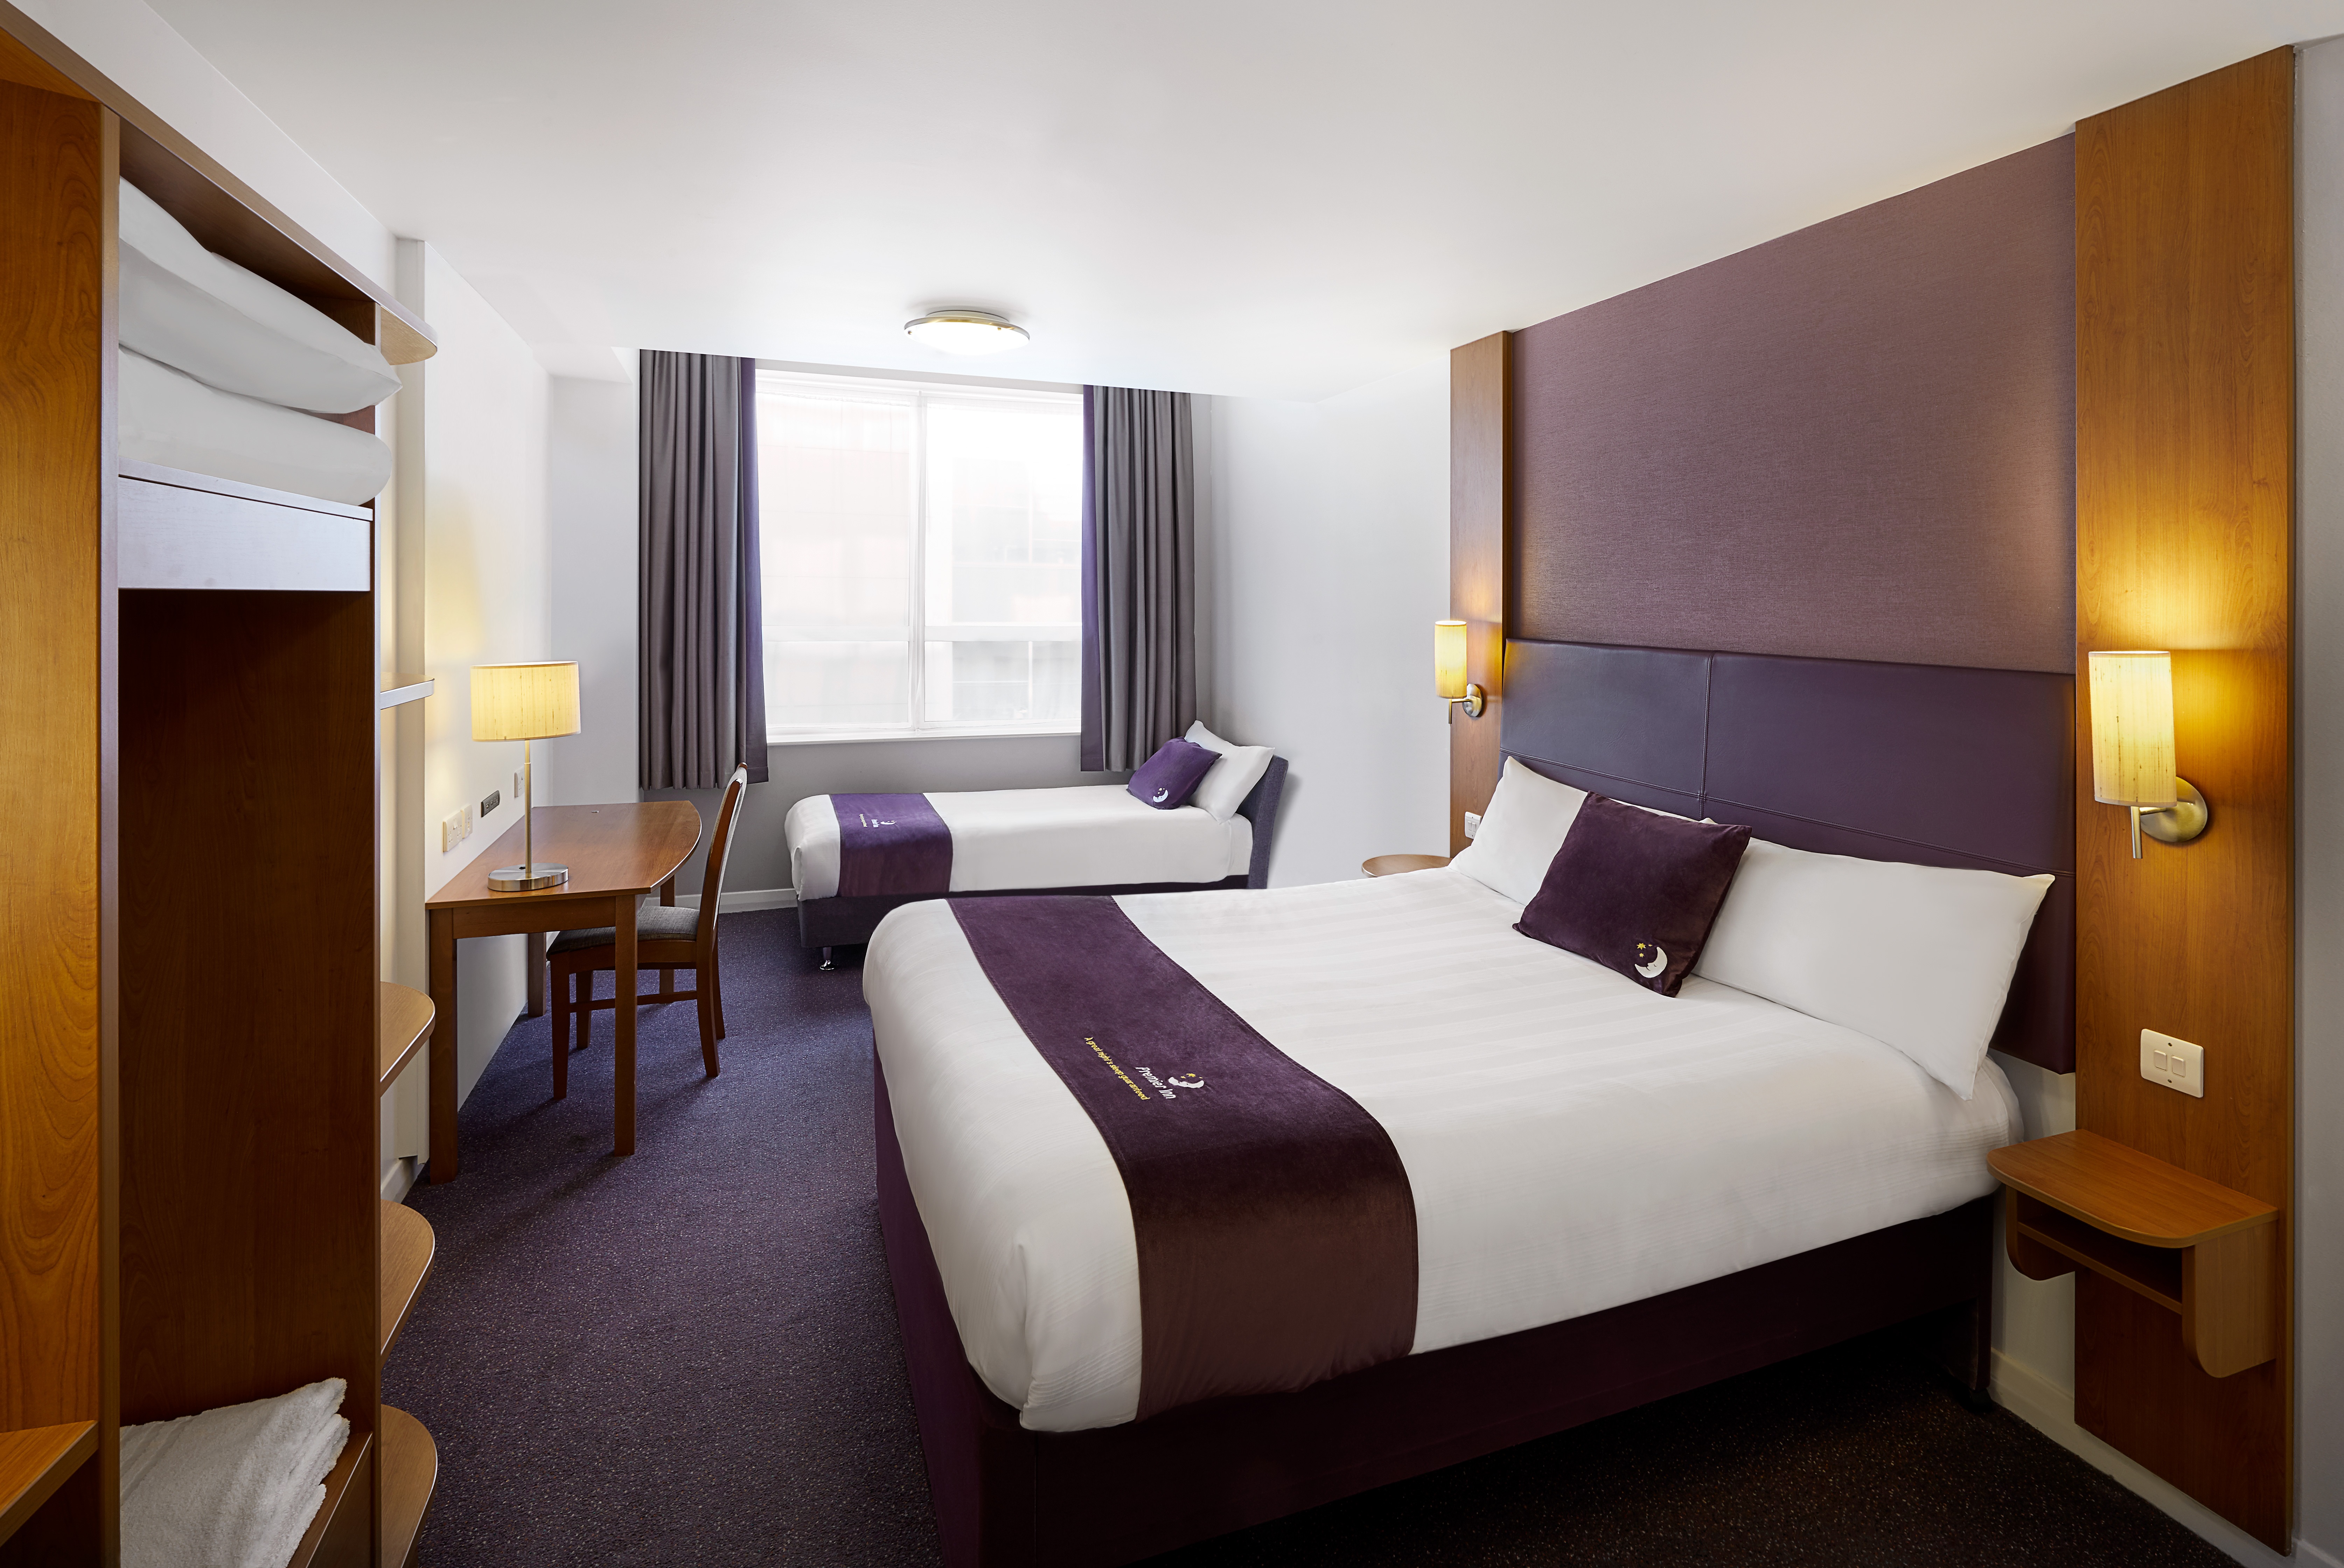 Premier Inn family room Premier Inn Falkirk Central hotel Camelon 03337 777934